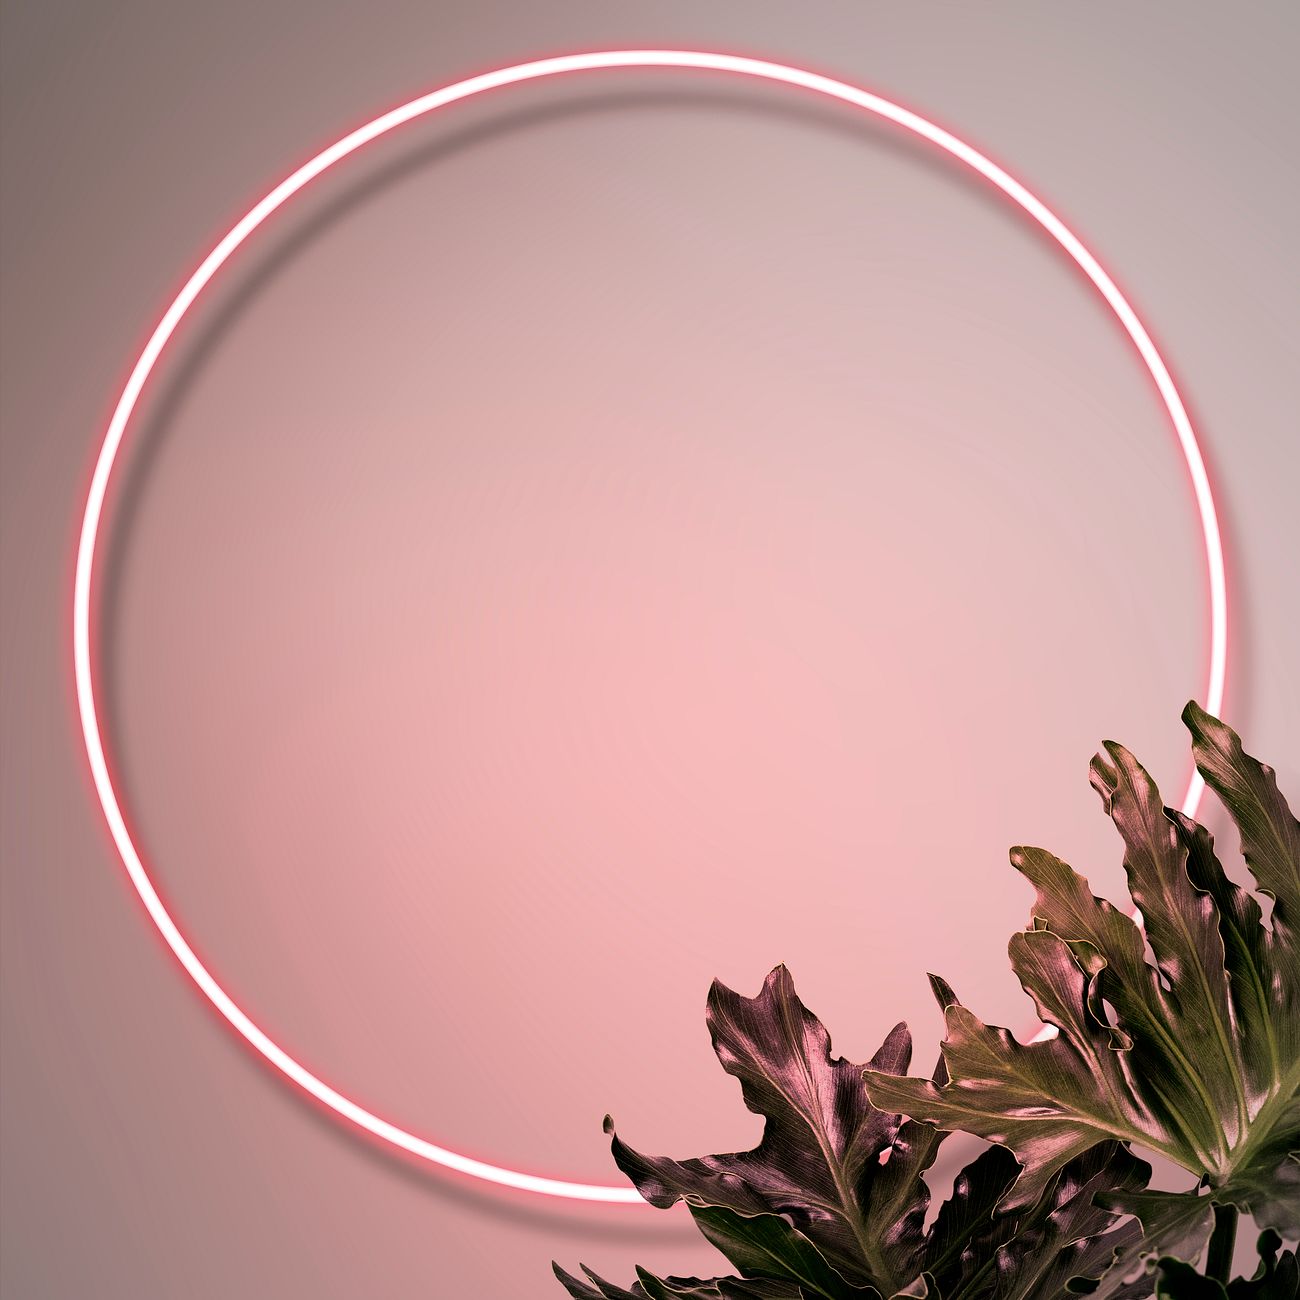 Download Neon botanical circle frame mockup | Royalty free ...